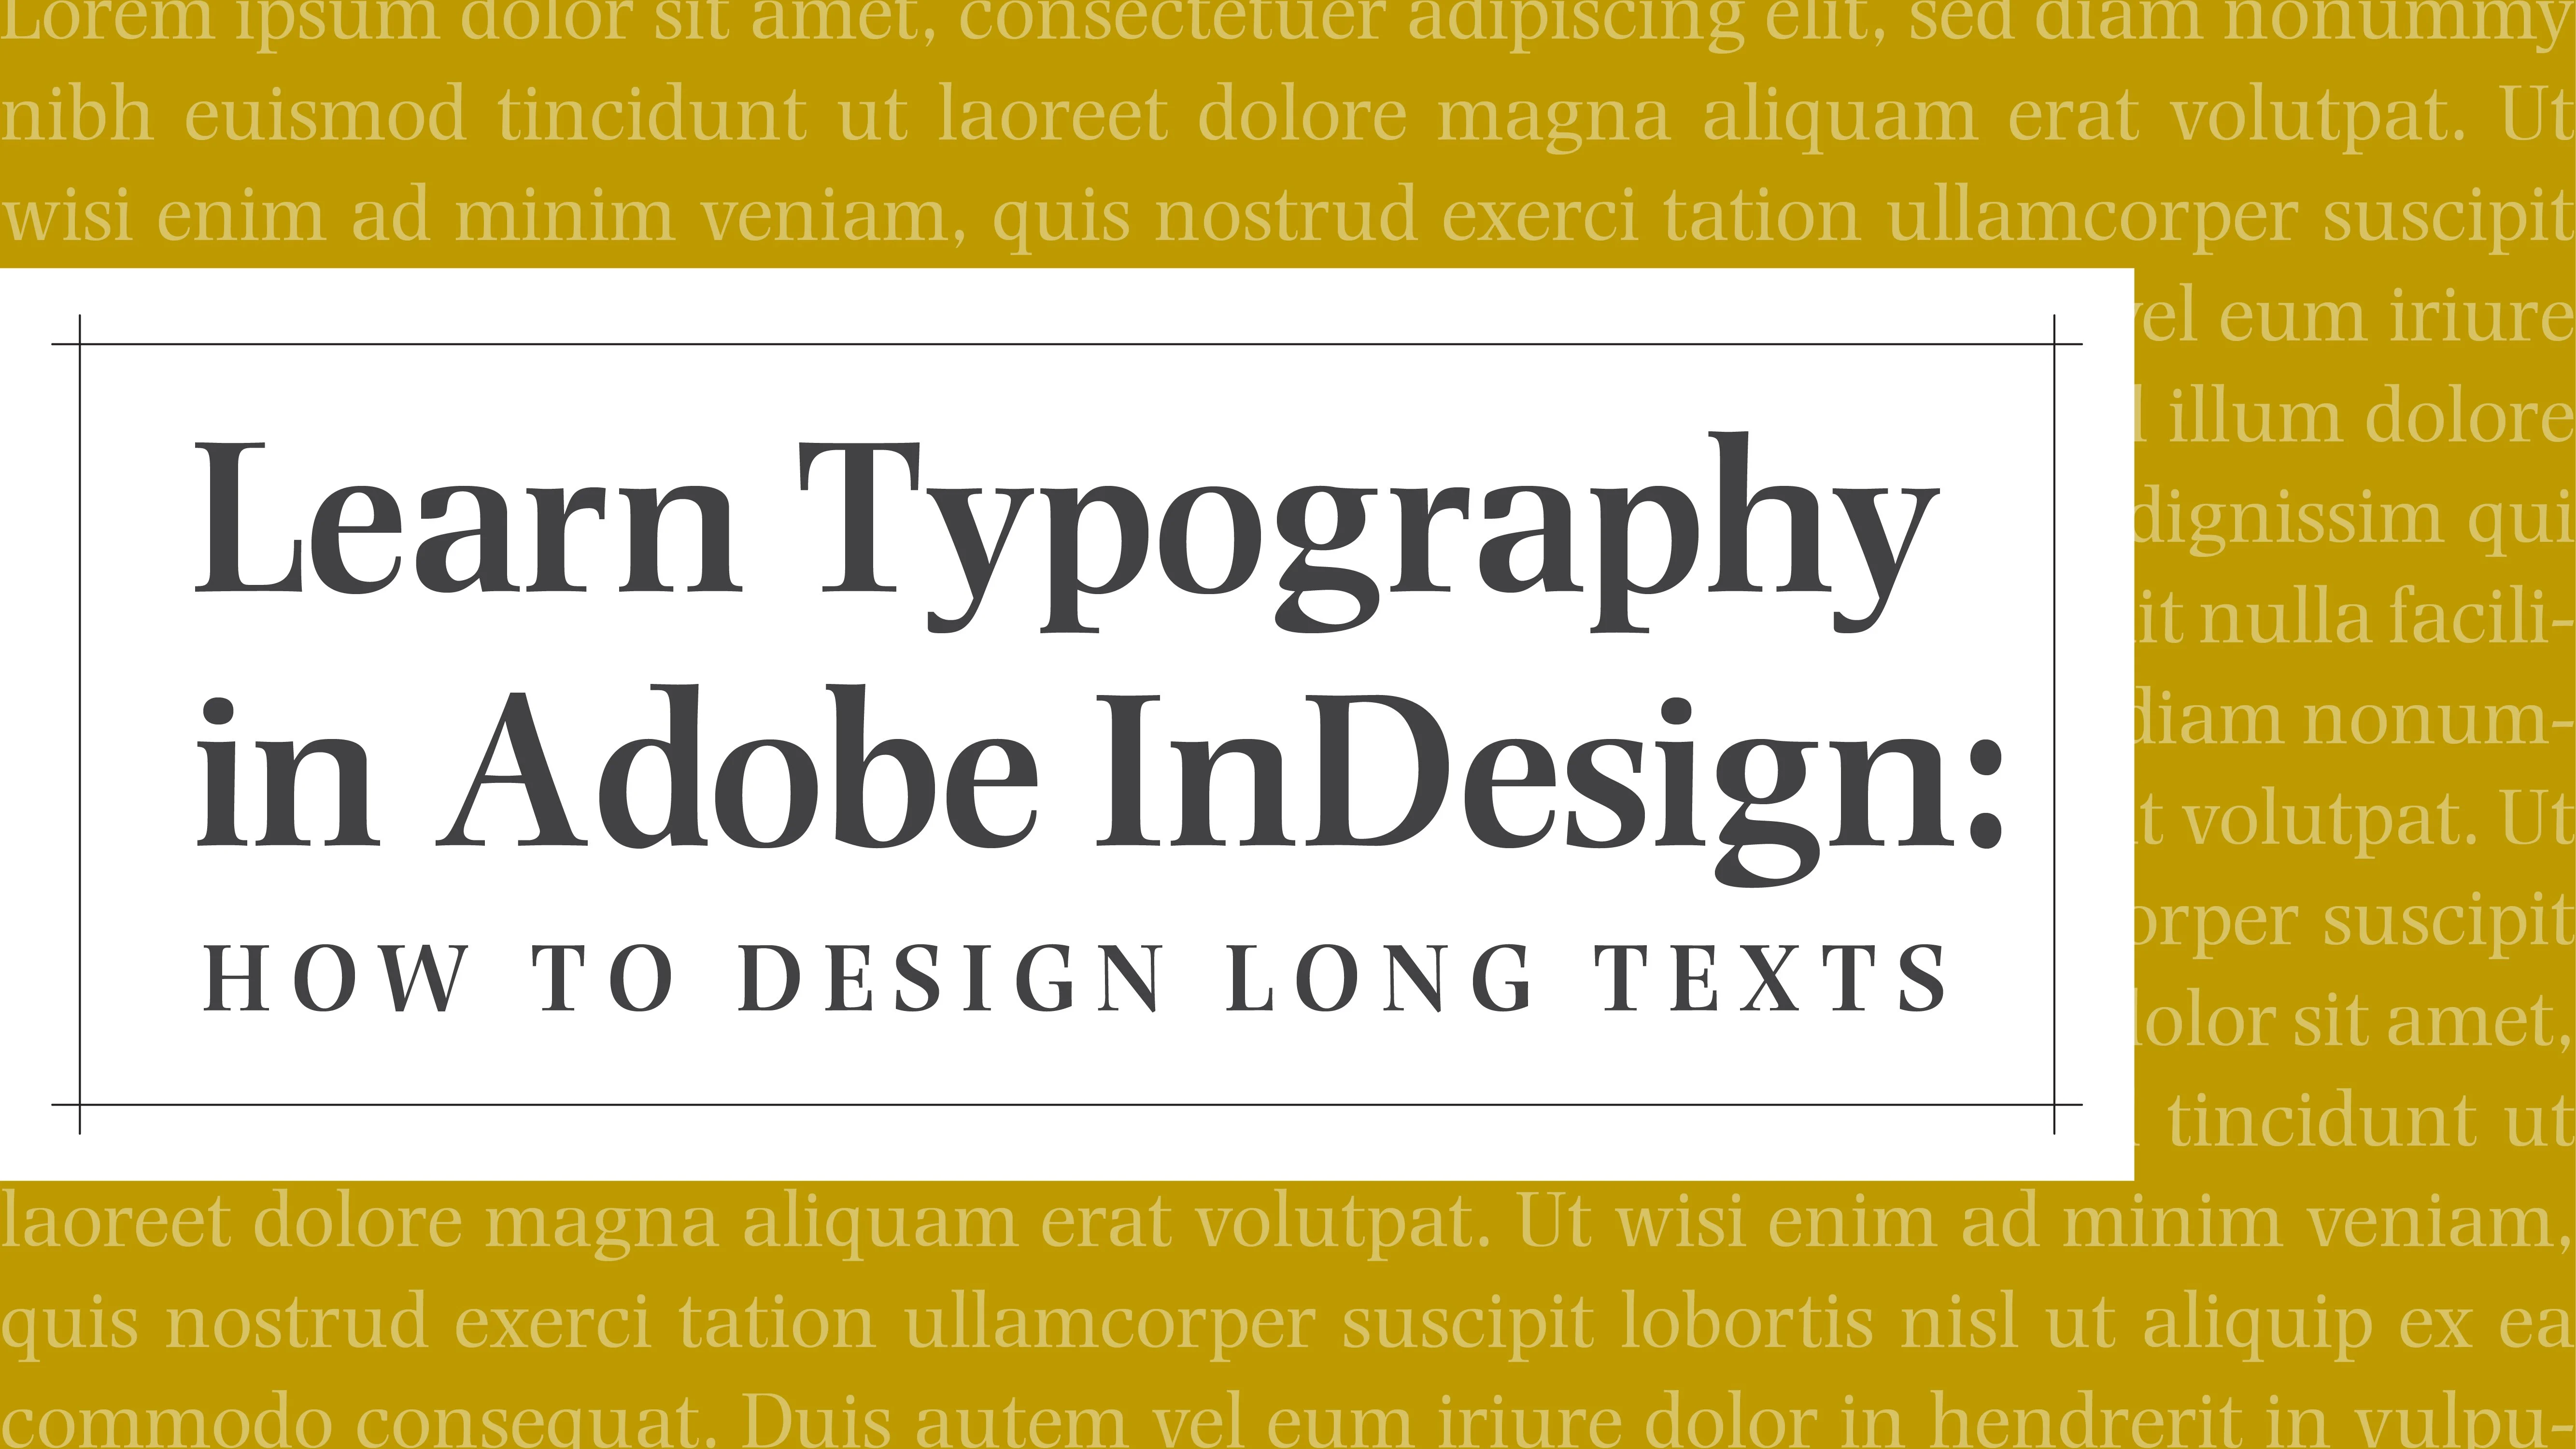 آموزش تایپوگرافی را در Adobe InDesign بیاموزید: نحوه طراحی متون طولانی